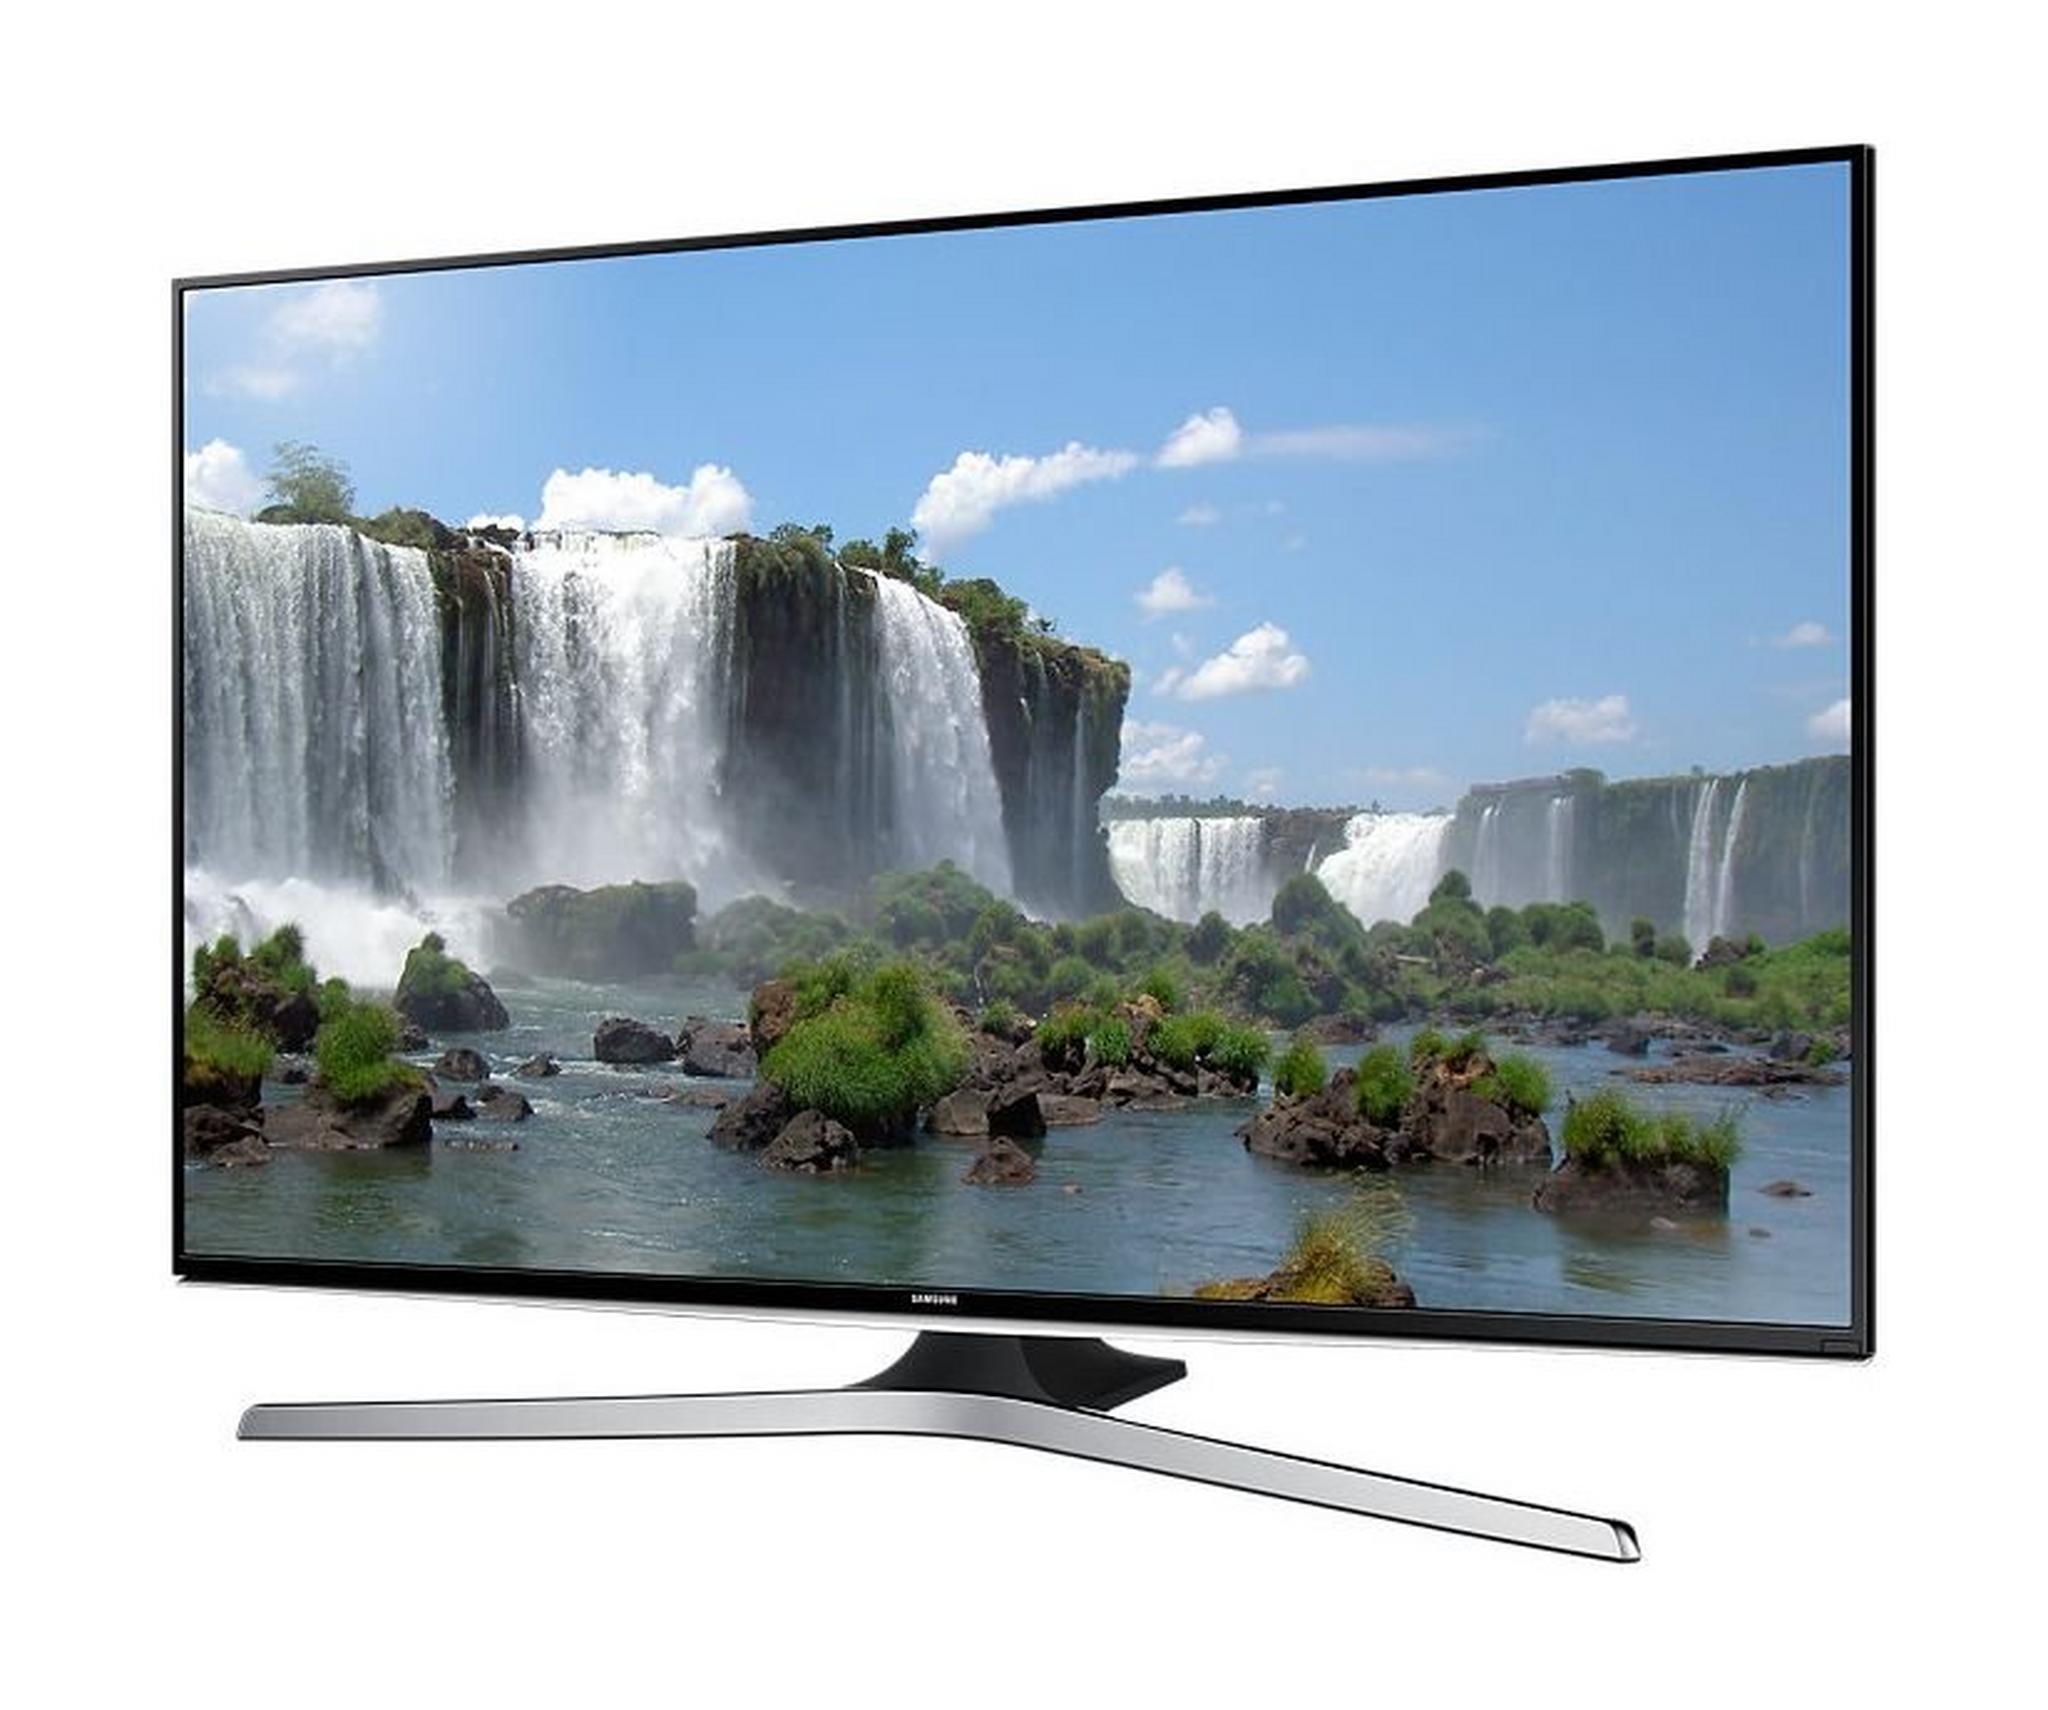 Samsung 55-inch Smart Full HD (1080p) LED TV - UA55J6200A